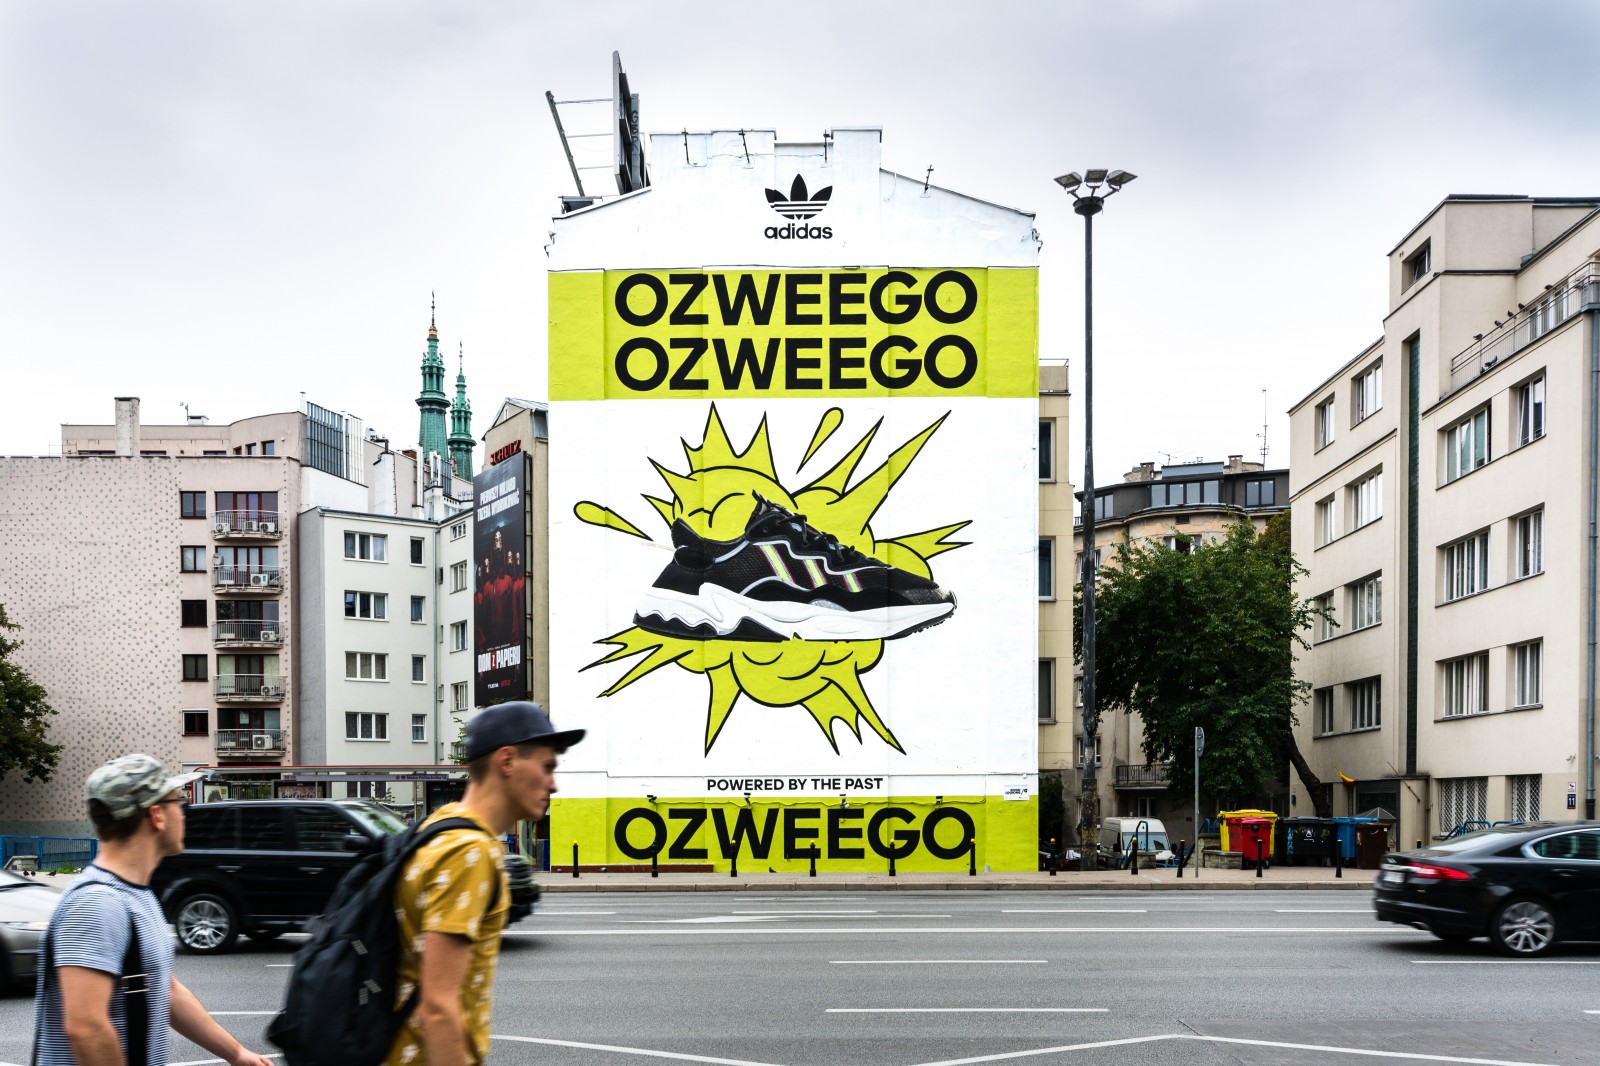 Mural reklamujący Ozweego dla marki Adidas Originals w Warszawie | Adidas Ozweego | Portfolio